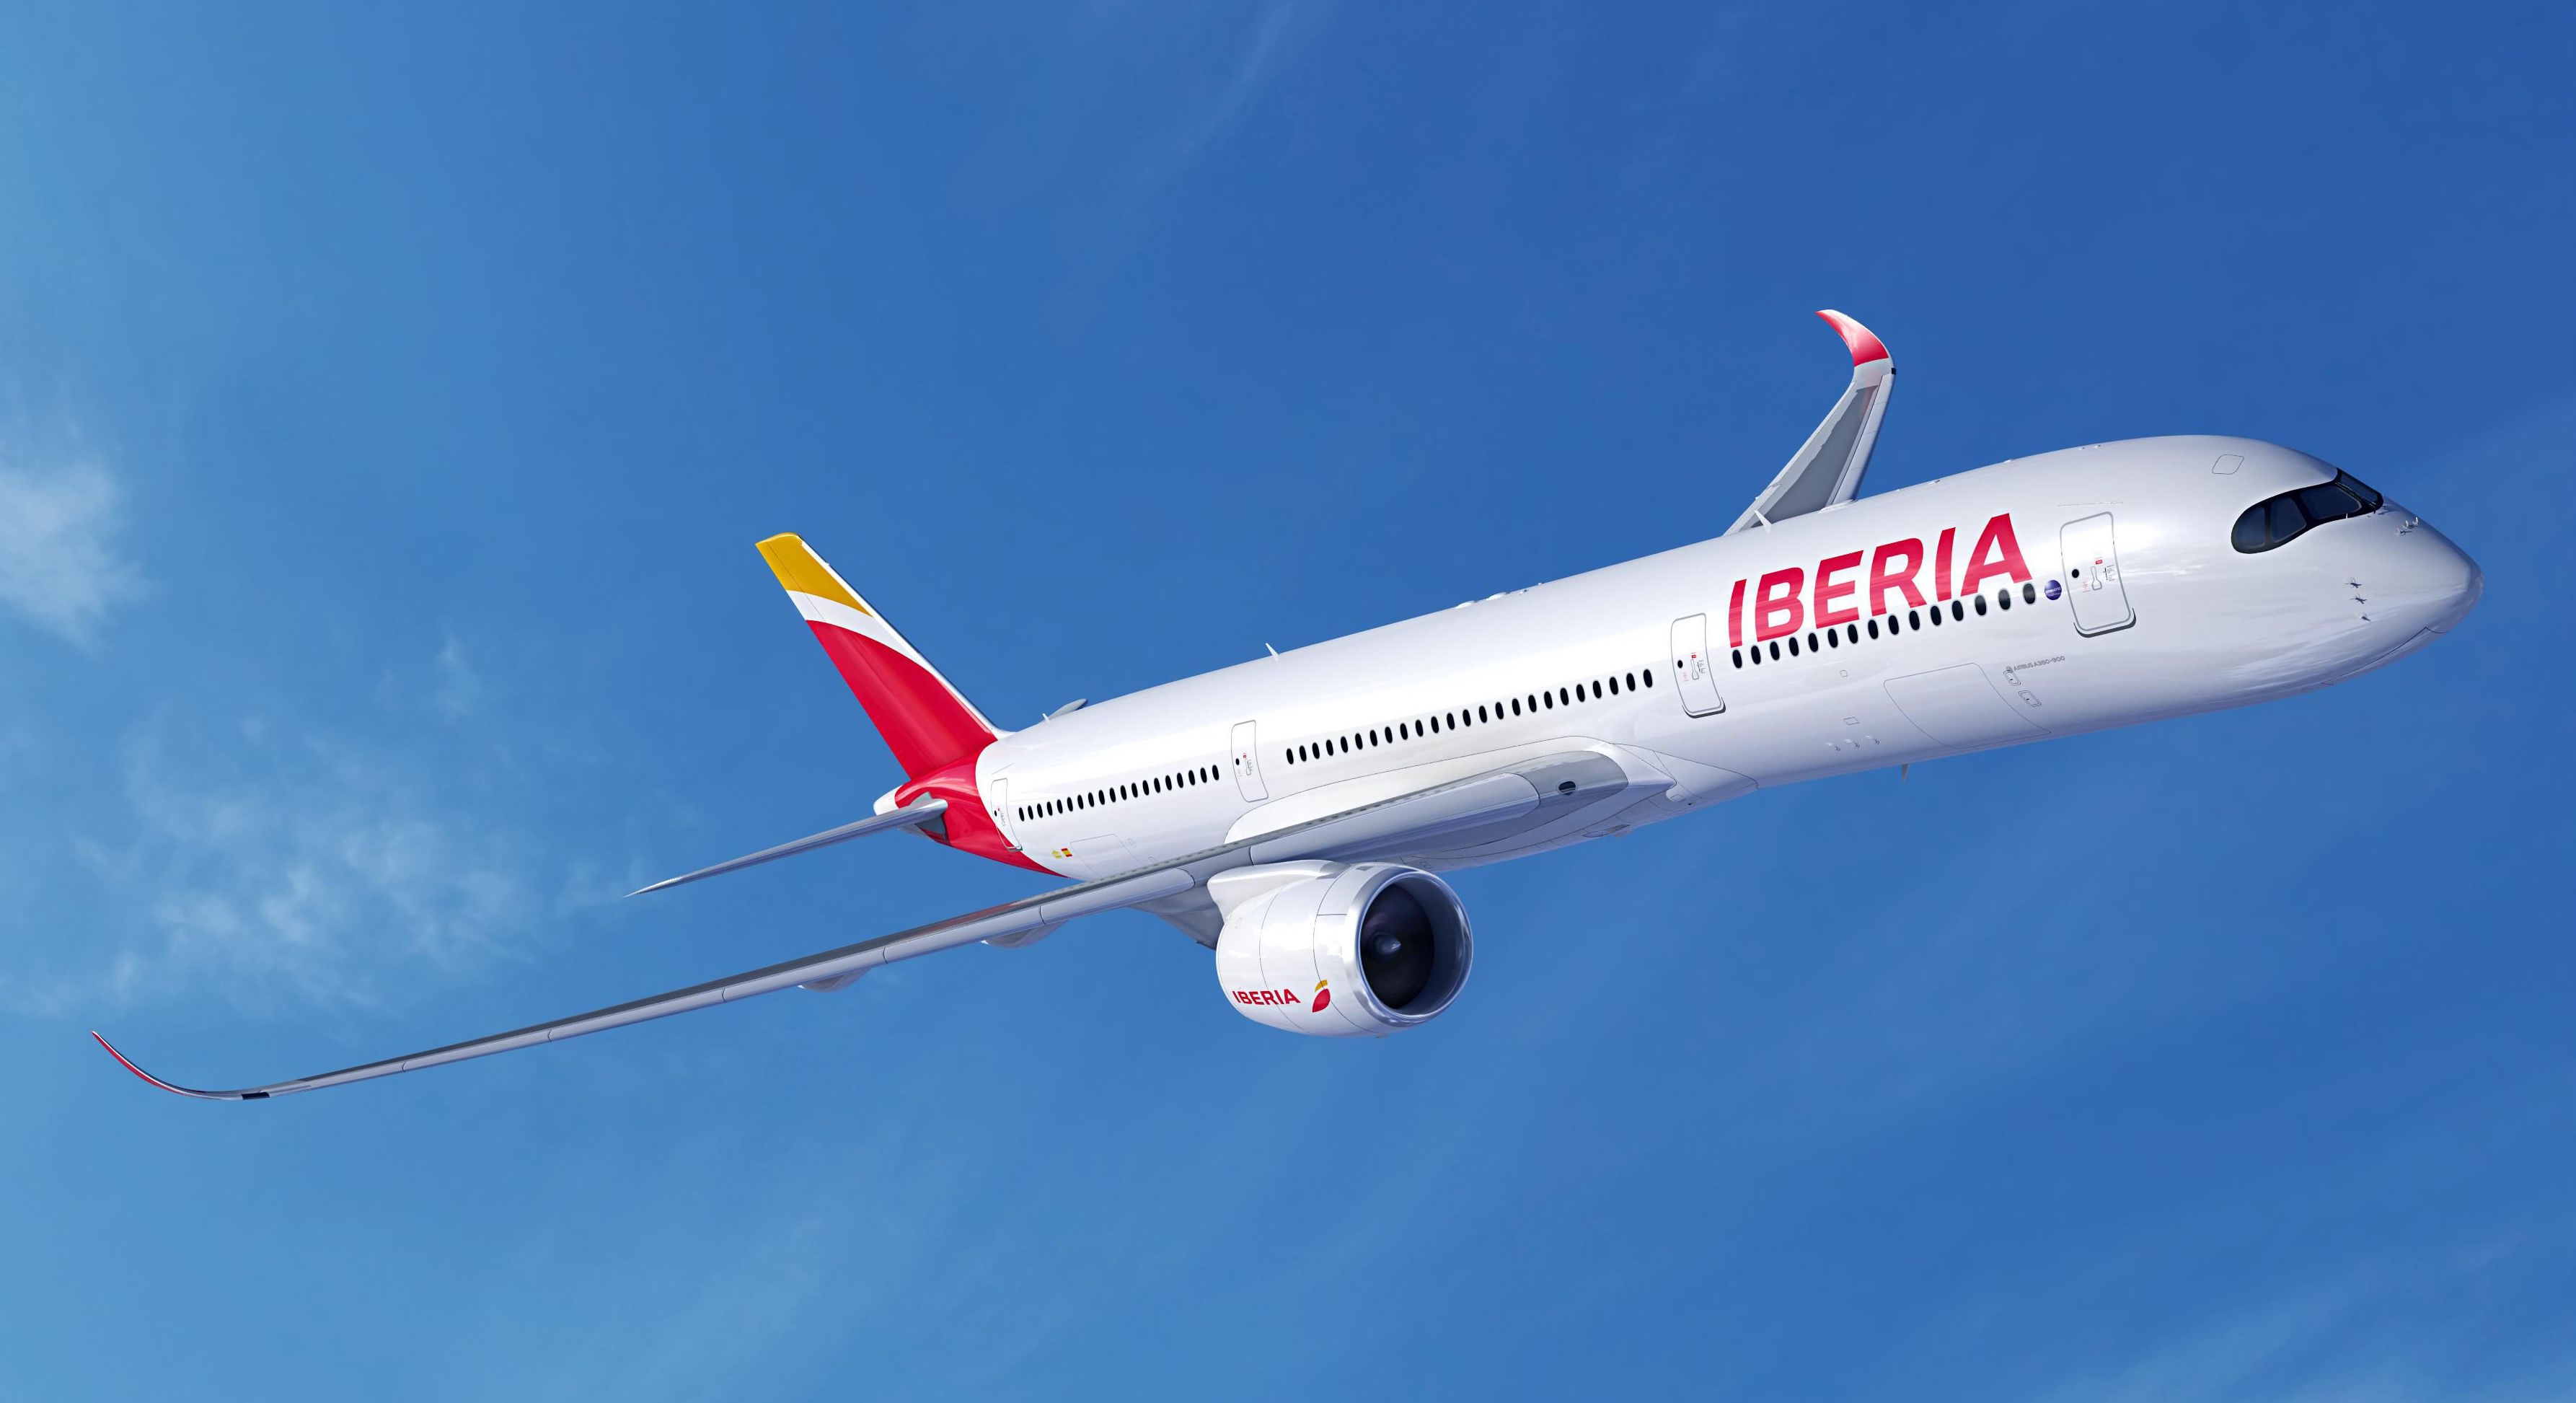 Iberia extenderá el vuelo sin maletas a todo el largo radio | rss2 | Revista de Preferente.com